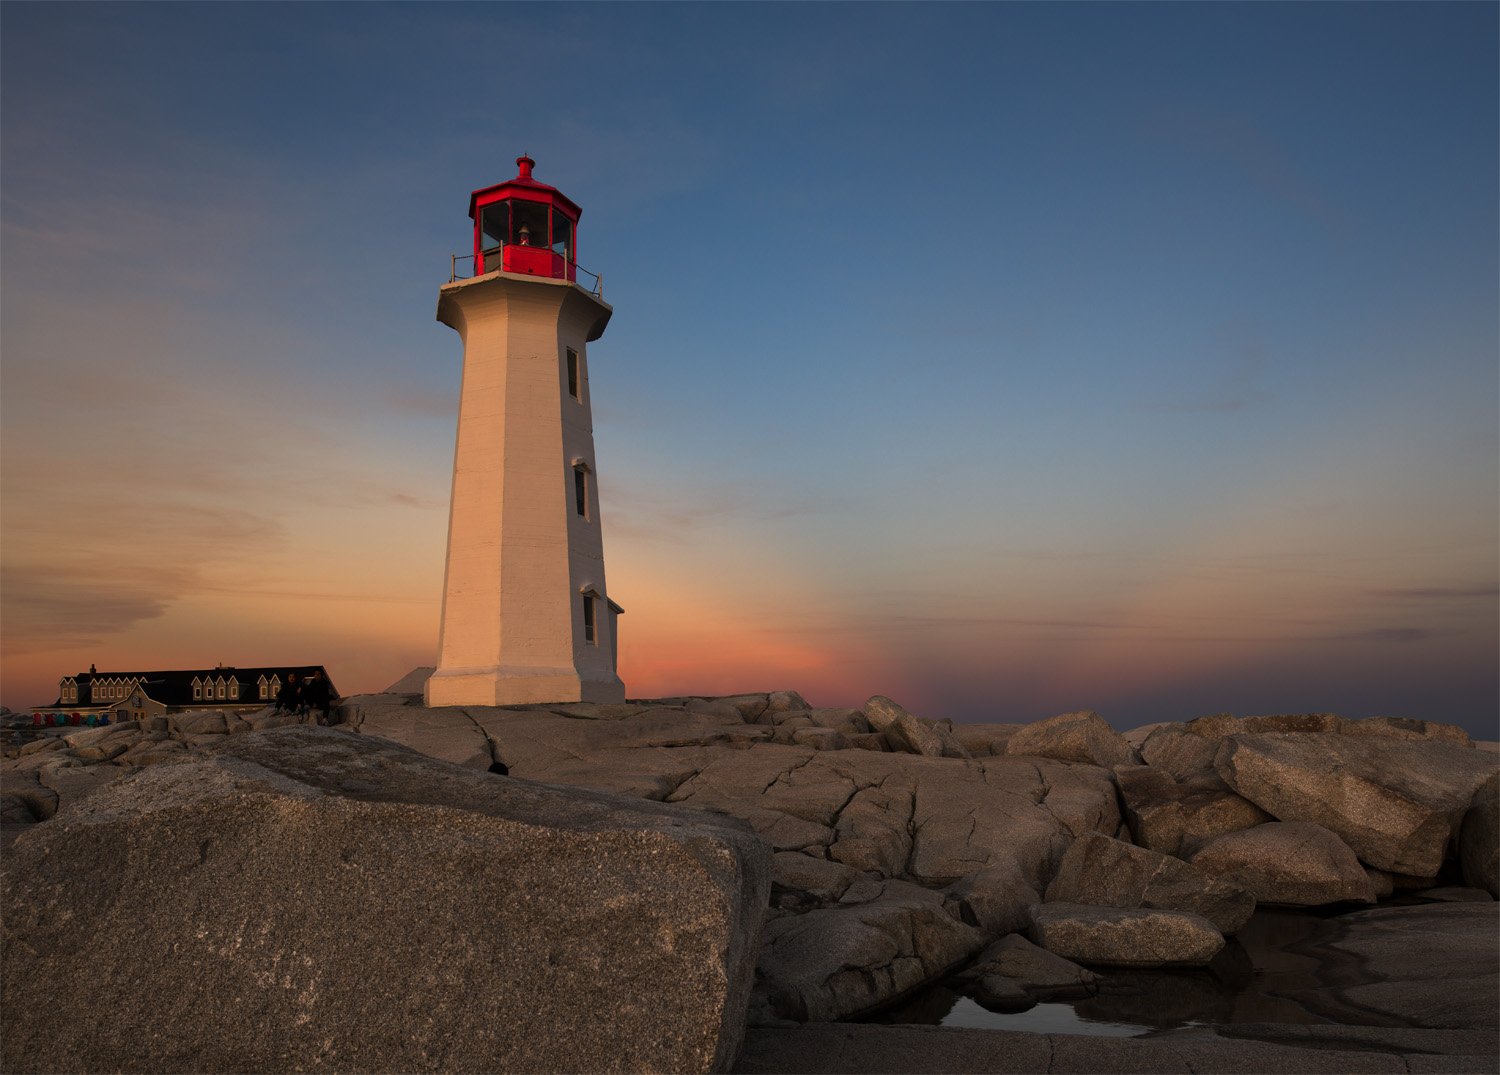 Sunset - Peggy's Cove Lighthouse. Nova Scotia, Canada